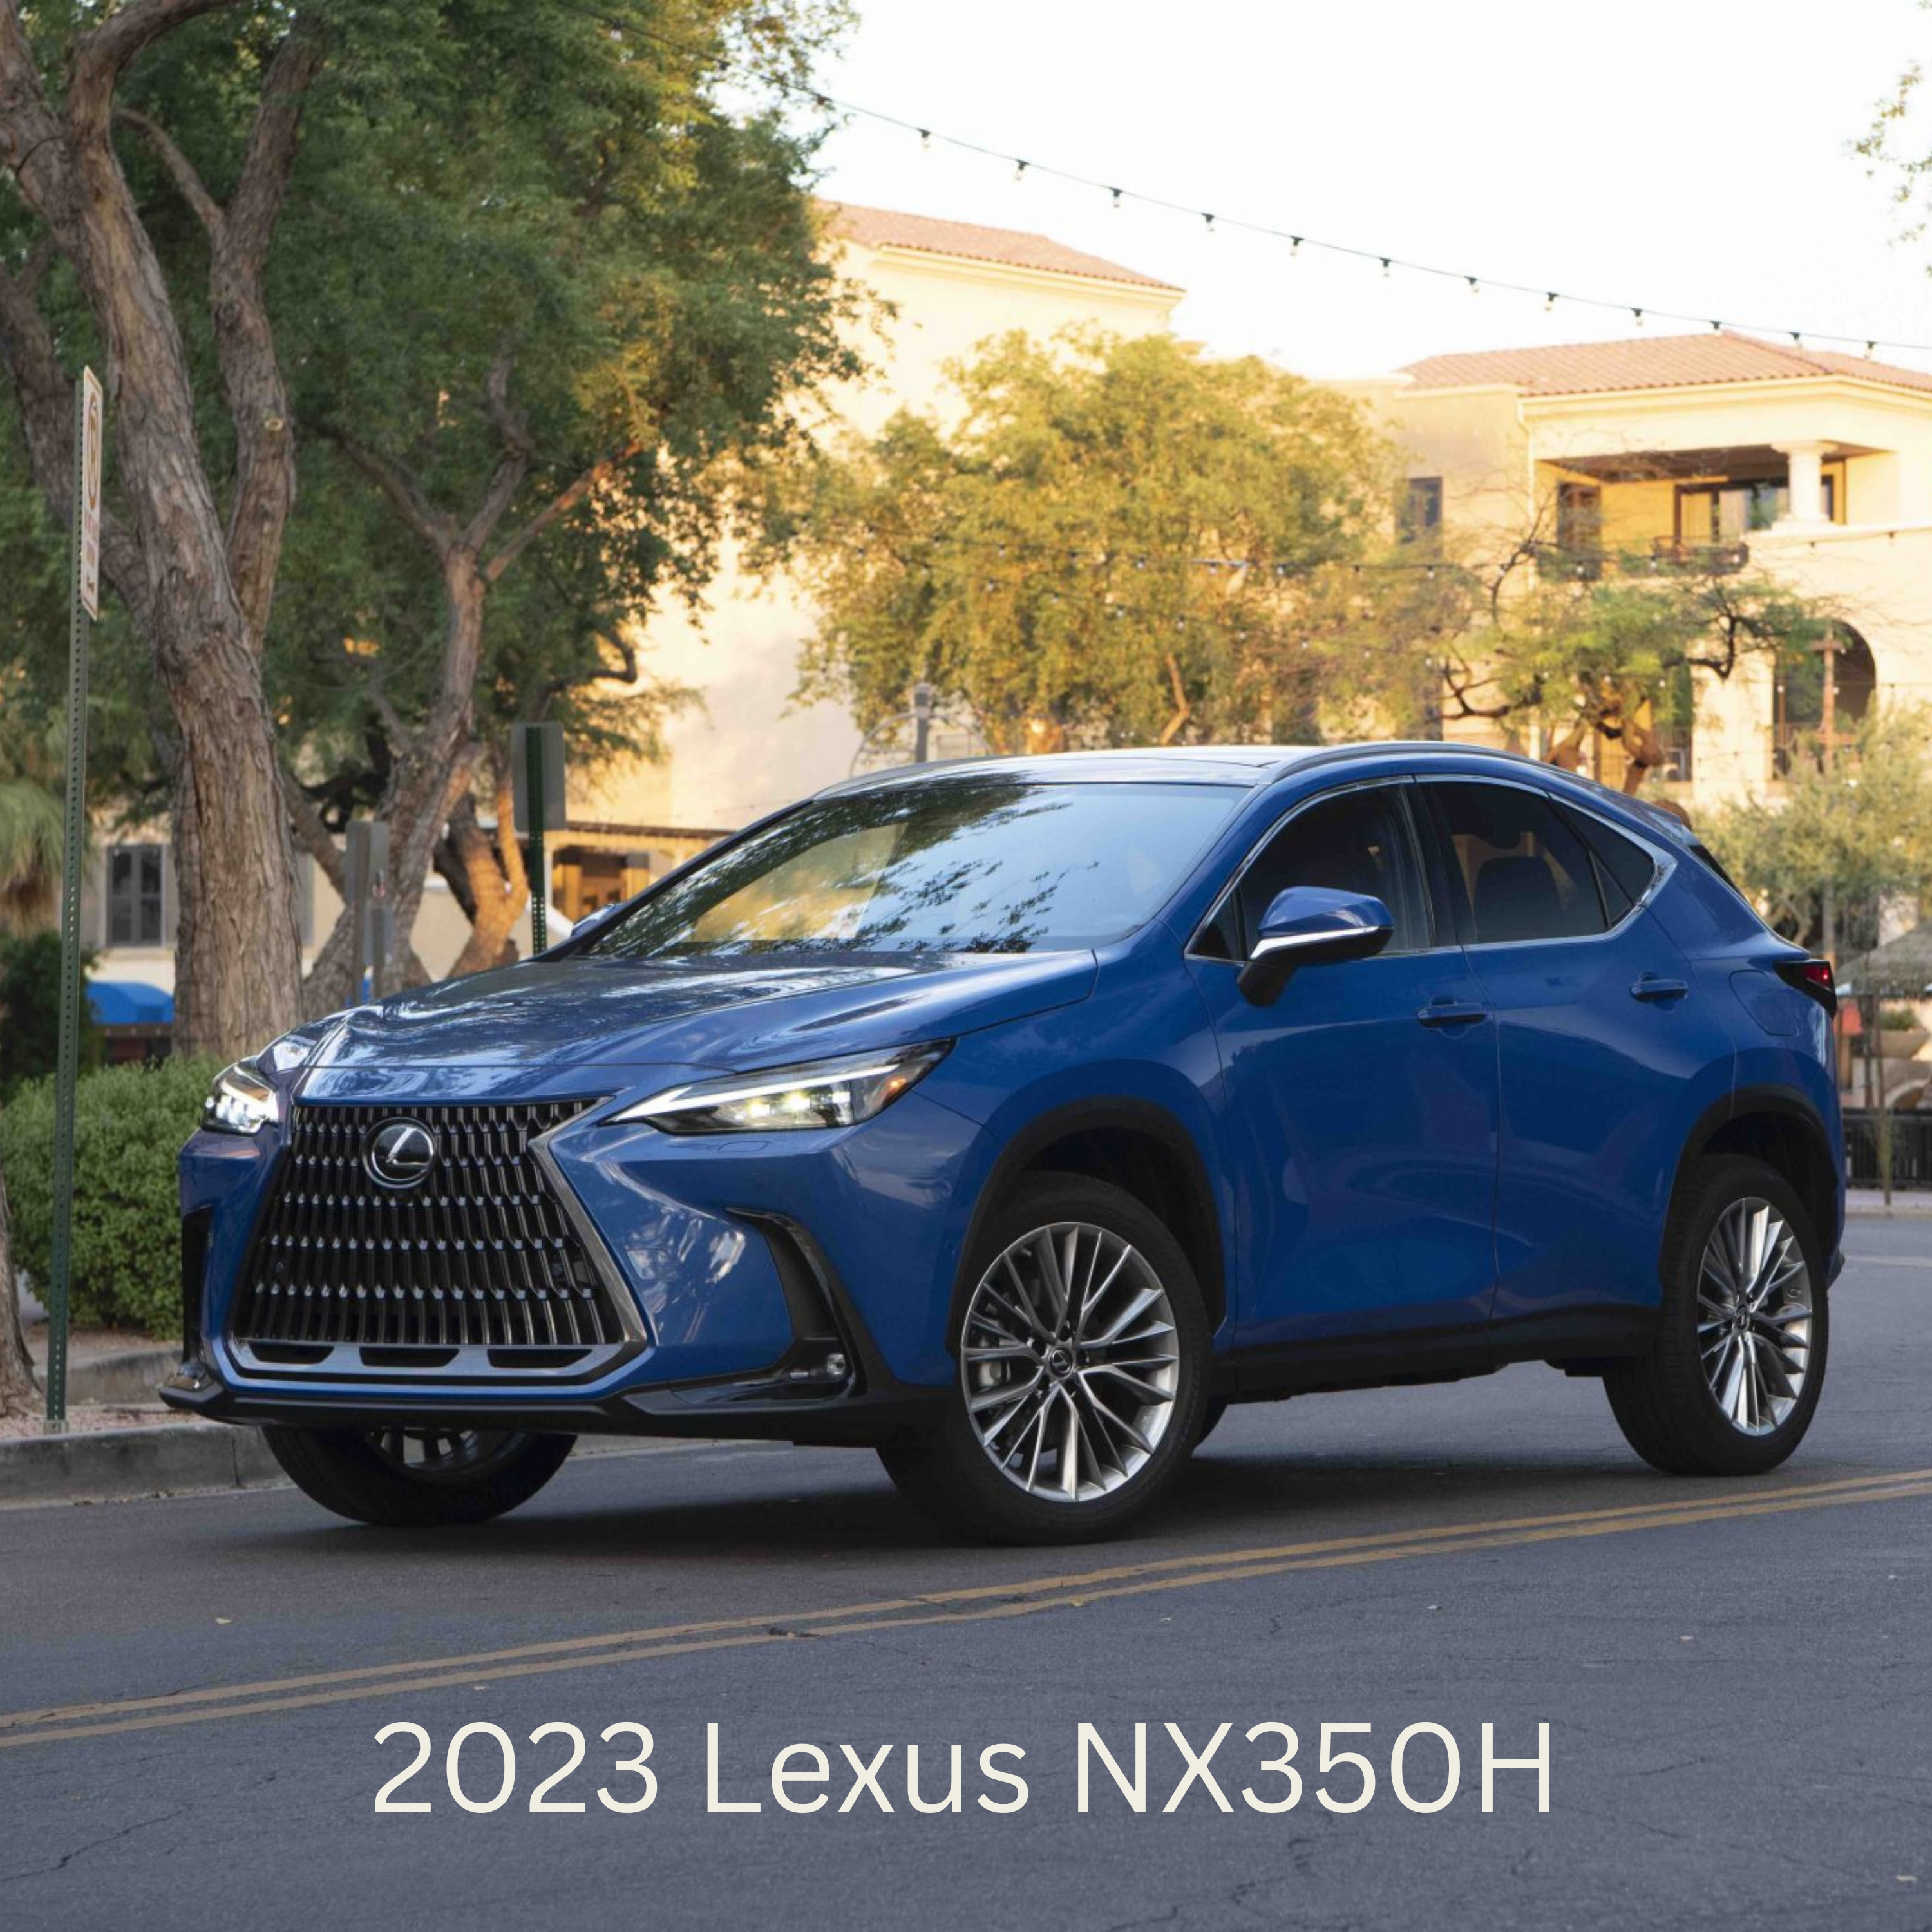 2023 Lexus NX350H